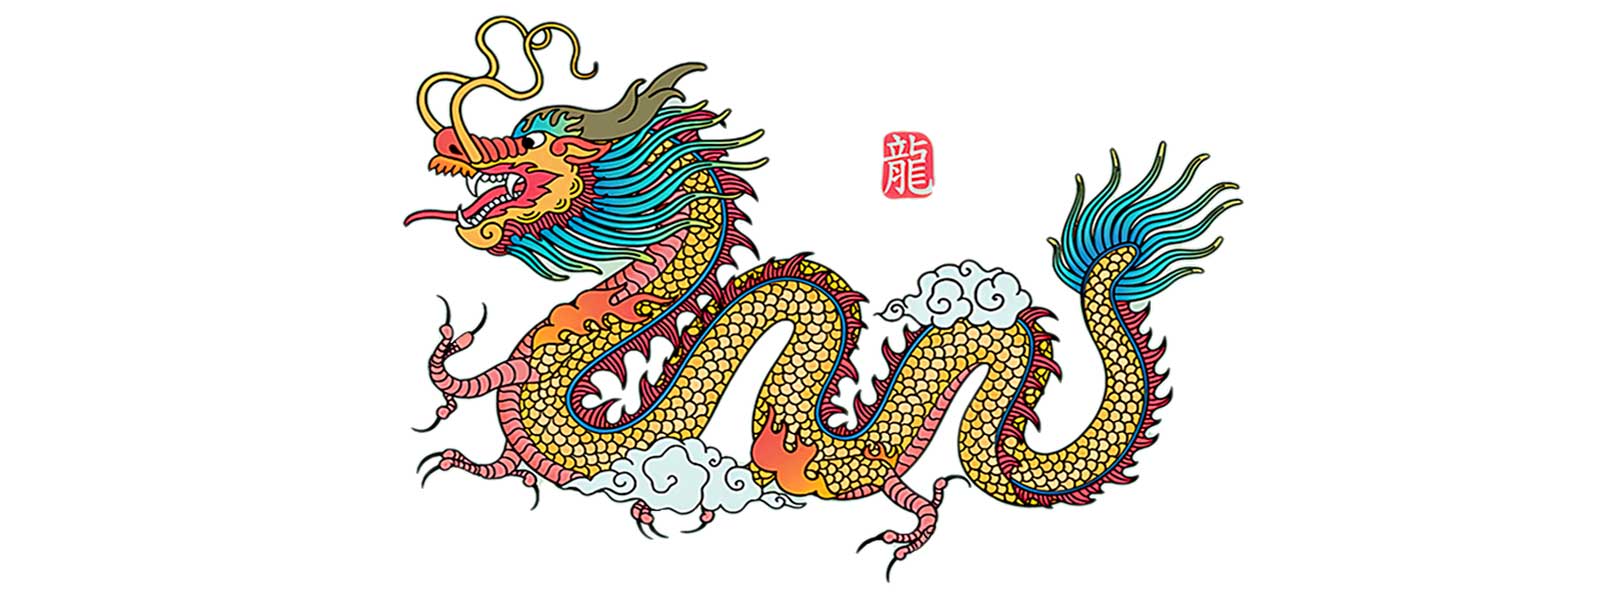 Dragon mythologie japonaise